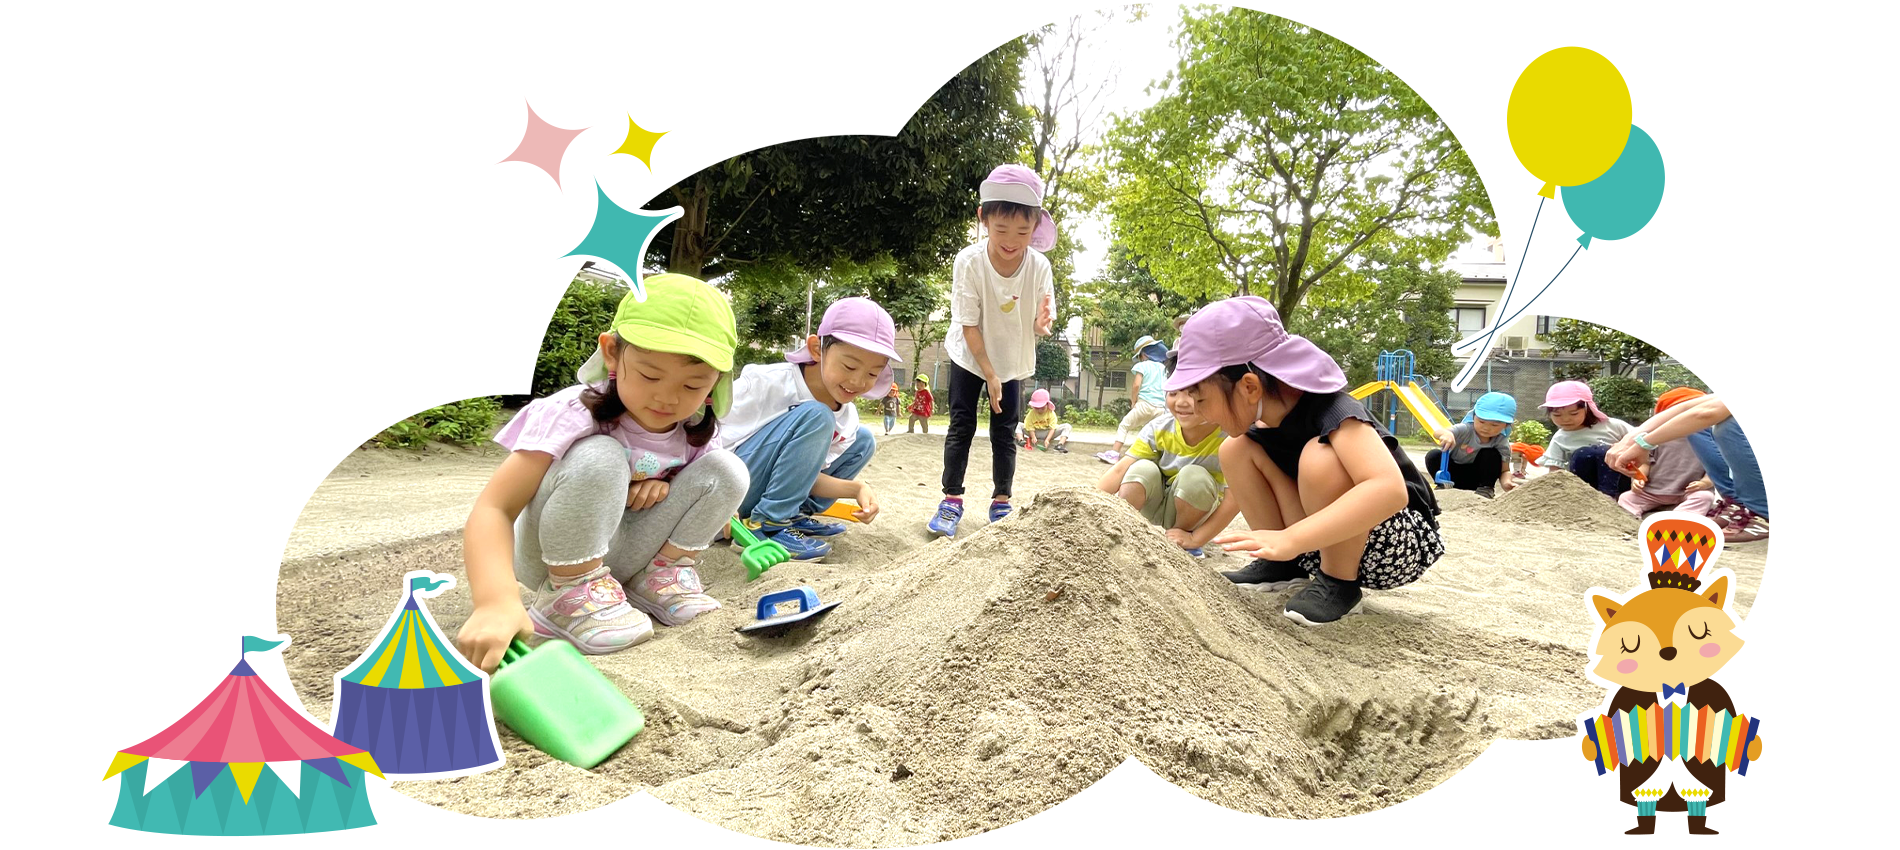 砂場で遊ぶ子どもたちの様子